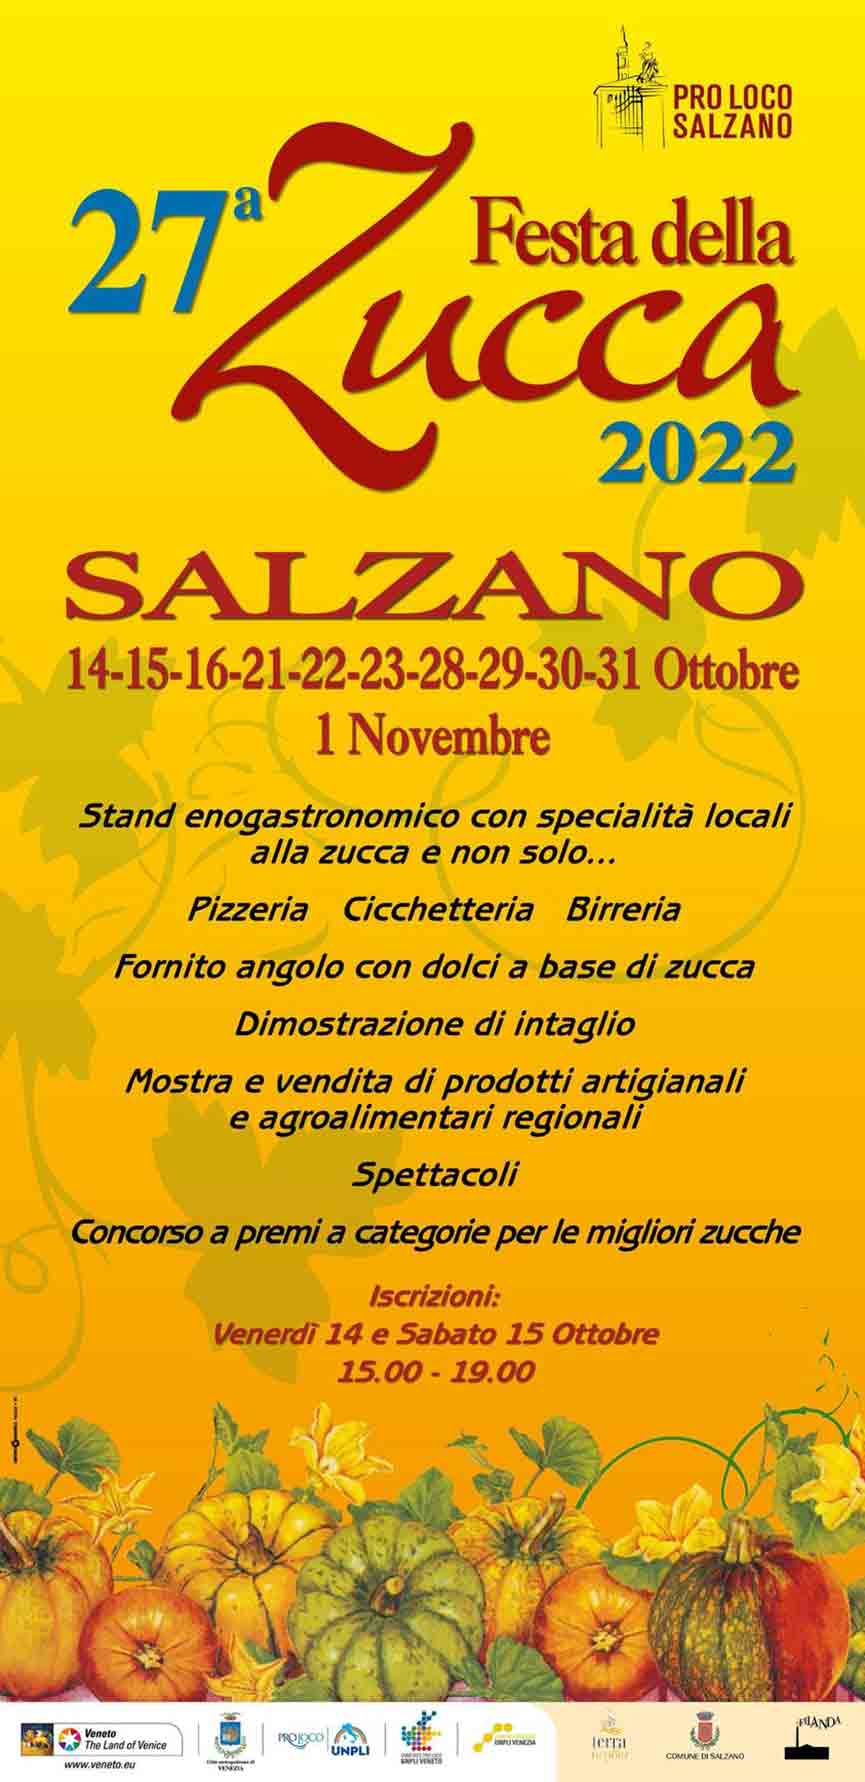 Festa della Zucca Salzano Venezia